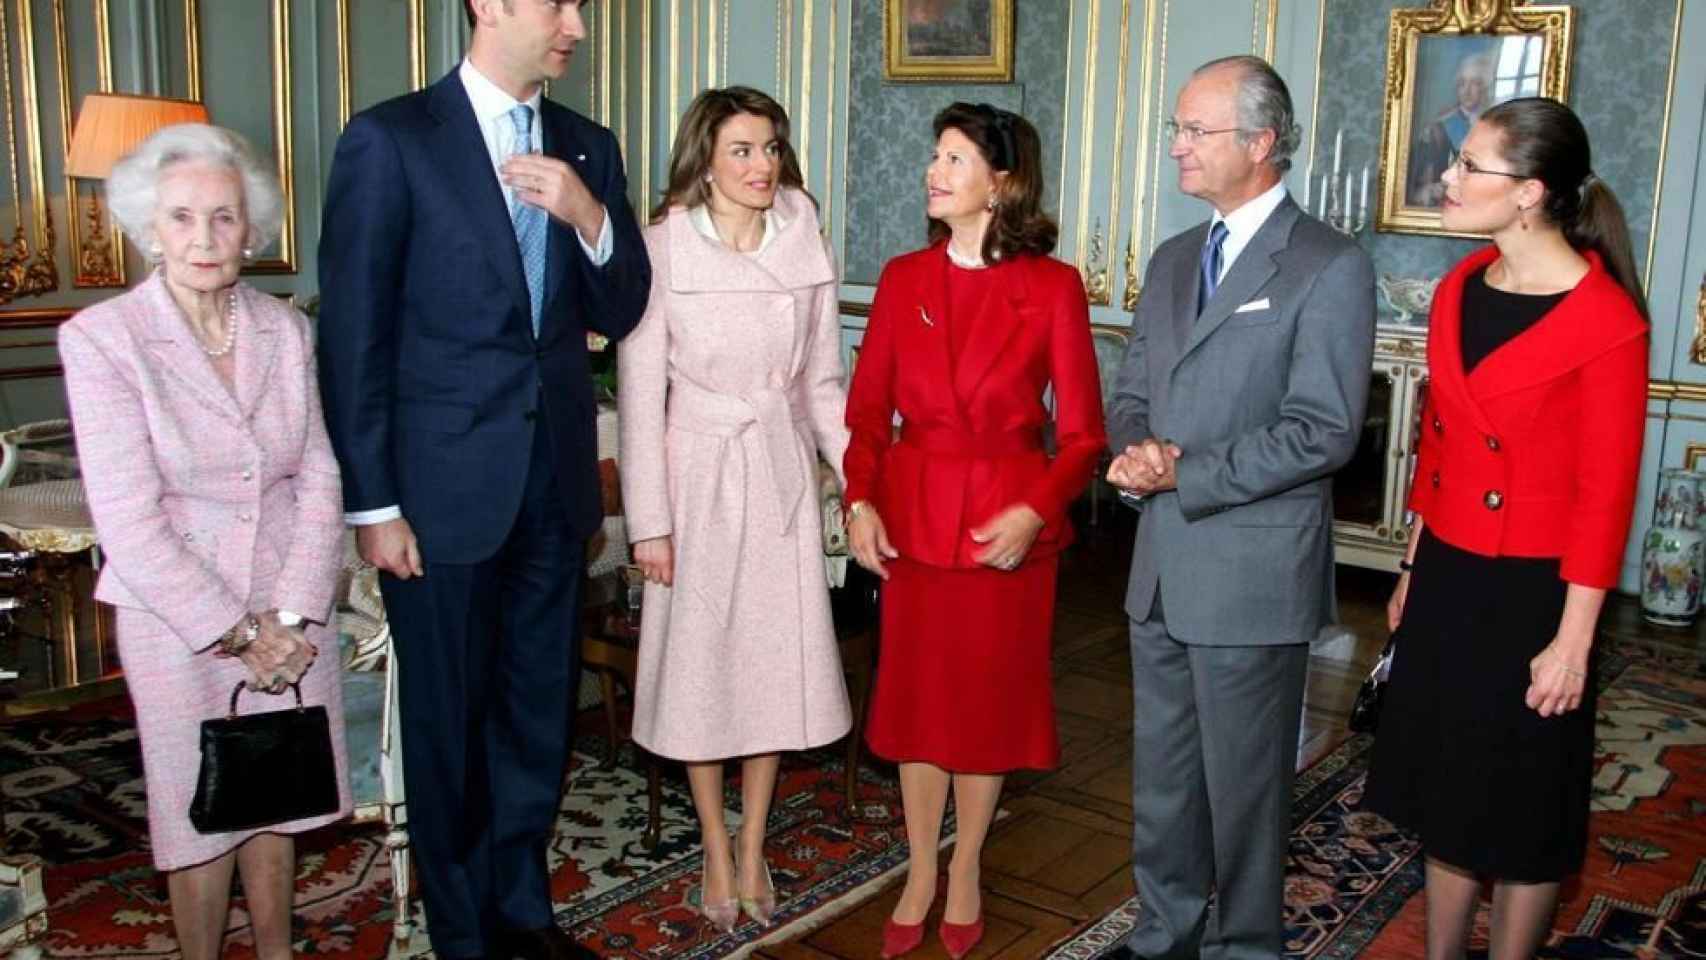 Los Reyes Carlos XVI Gustavo y Silvia, las Princesas Victoria y Lilian de Suecia y los Príncipes de Asturias.